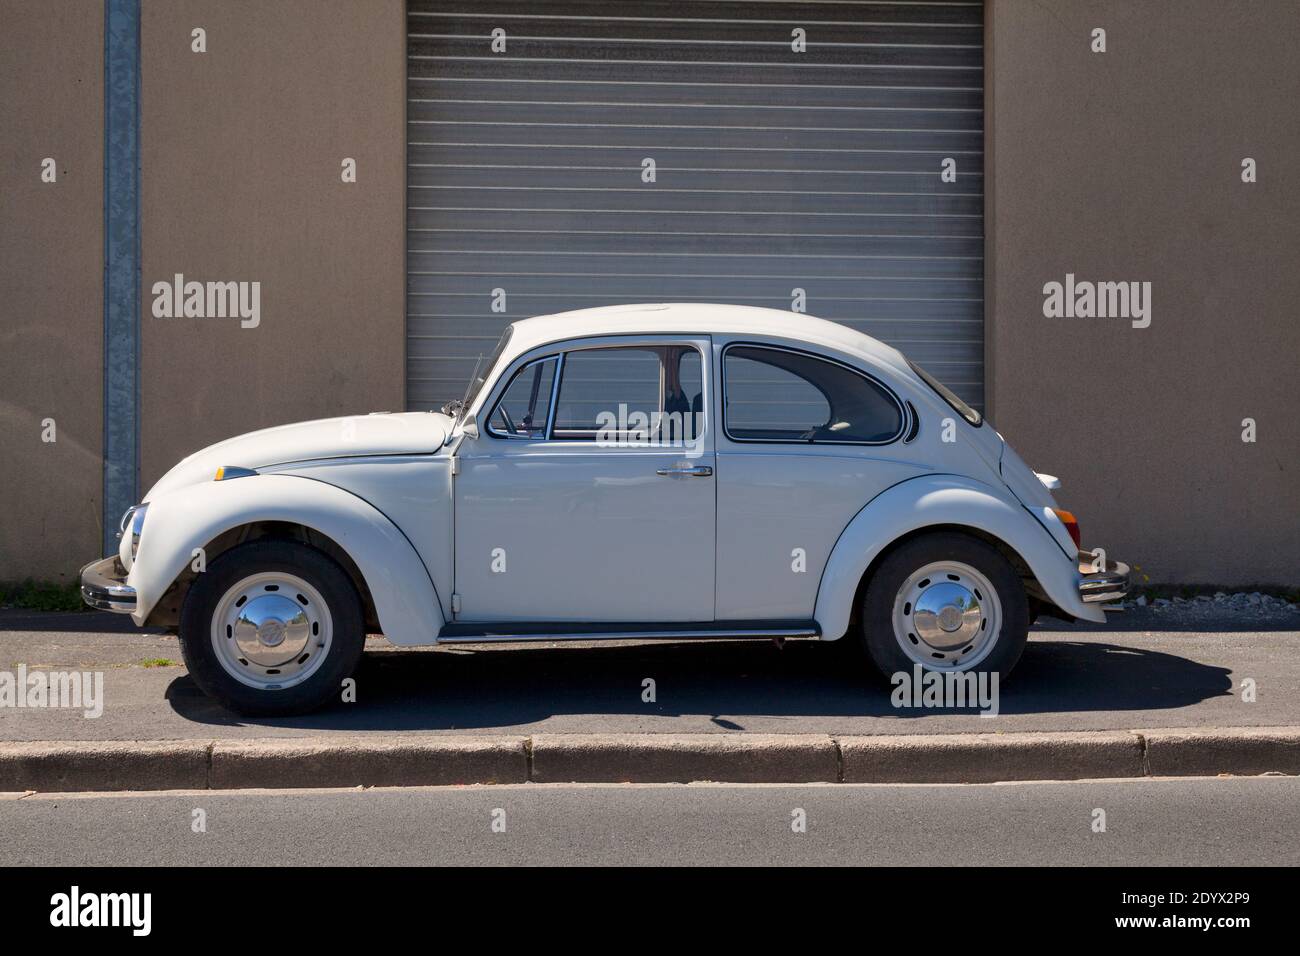 Bayeux, France - août 06 2020 : la Volkswagen Beetle est fabriquée et commercialisée par le constructeur automobile allemand Volkswagen (VW) depuis 1938. Banque D'Images